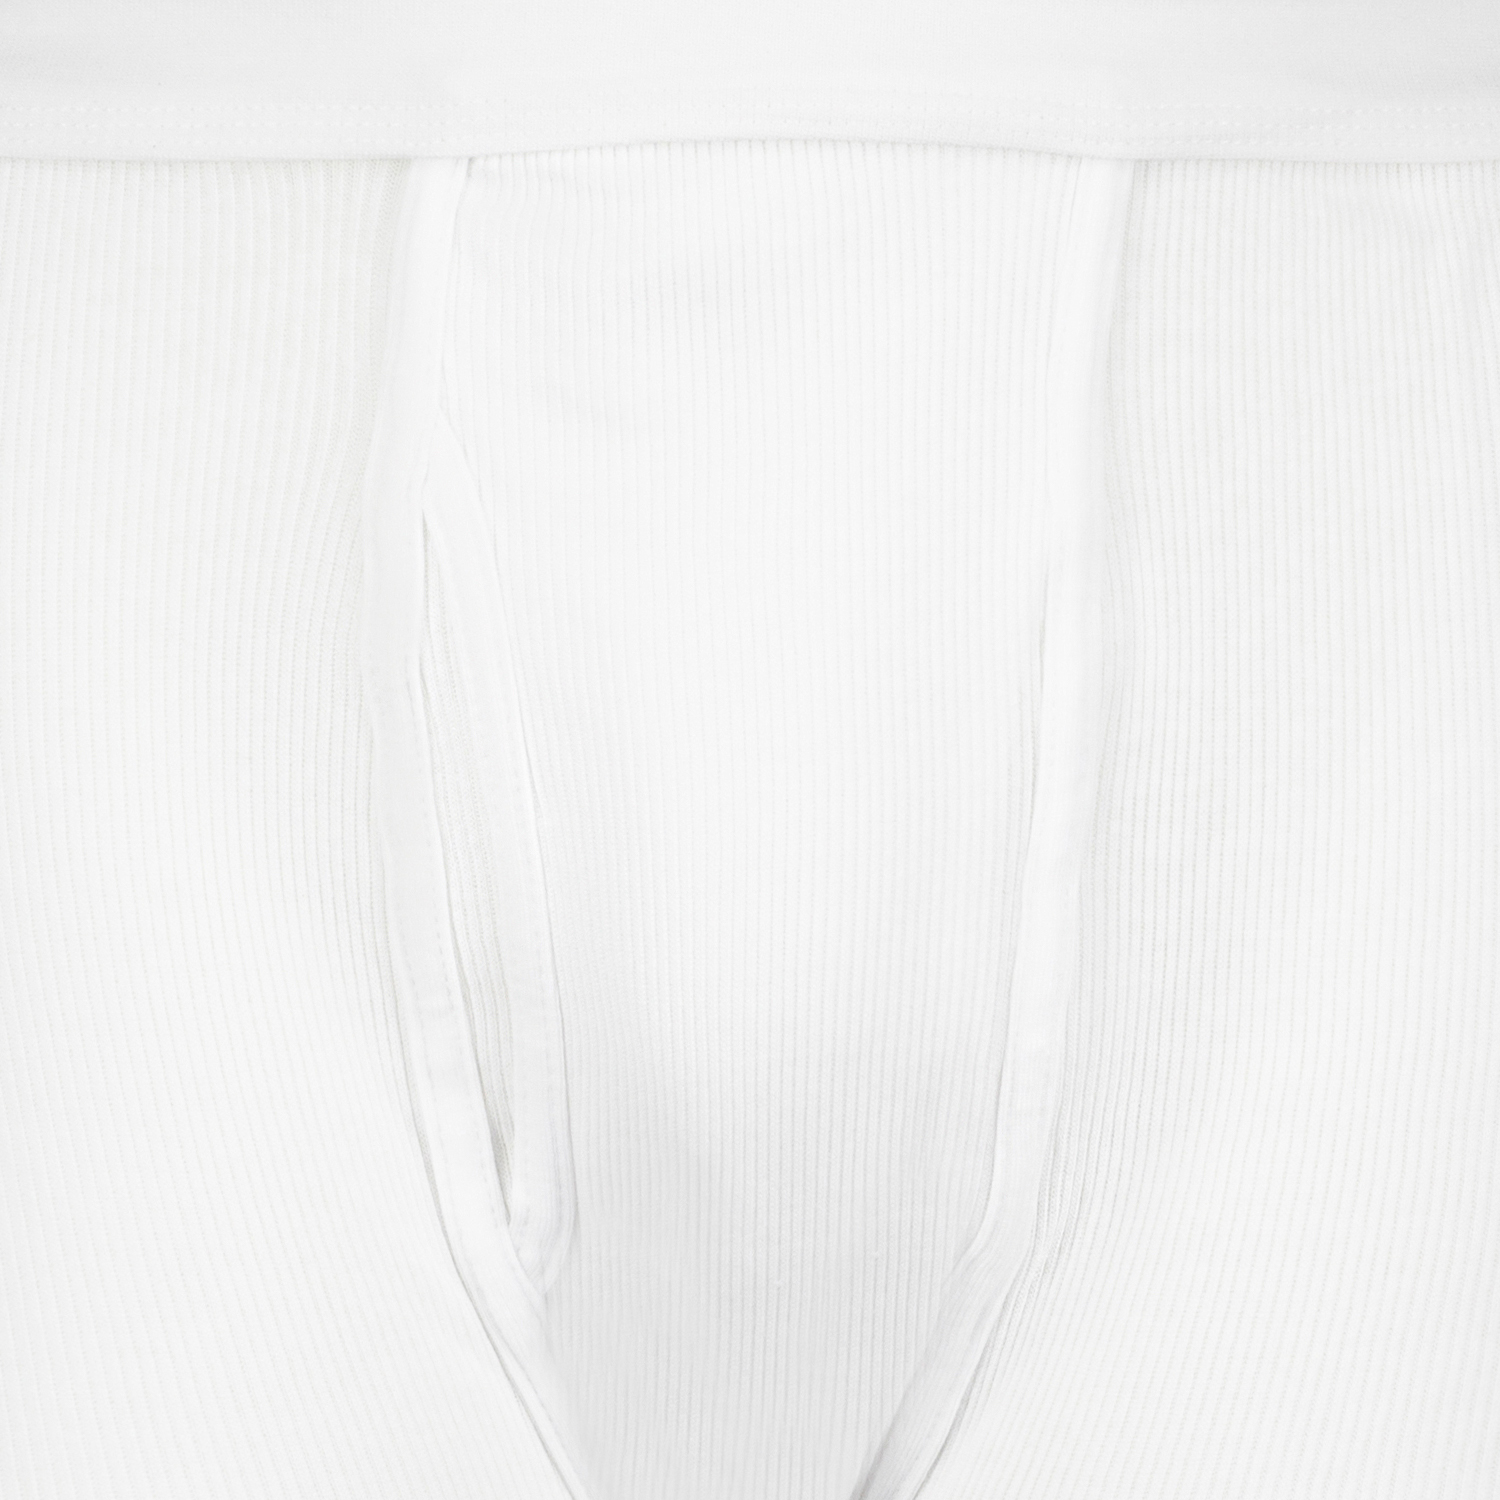 Kurze weiße Doppelripp Unterhose von Adamo-Fashion in großen Größen bis 20